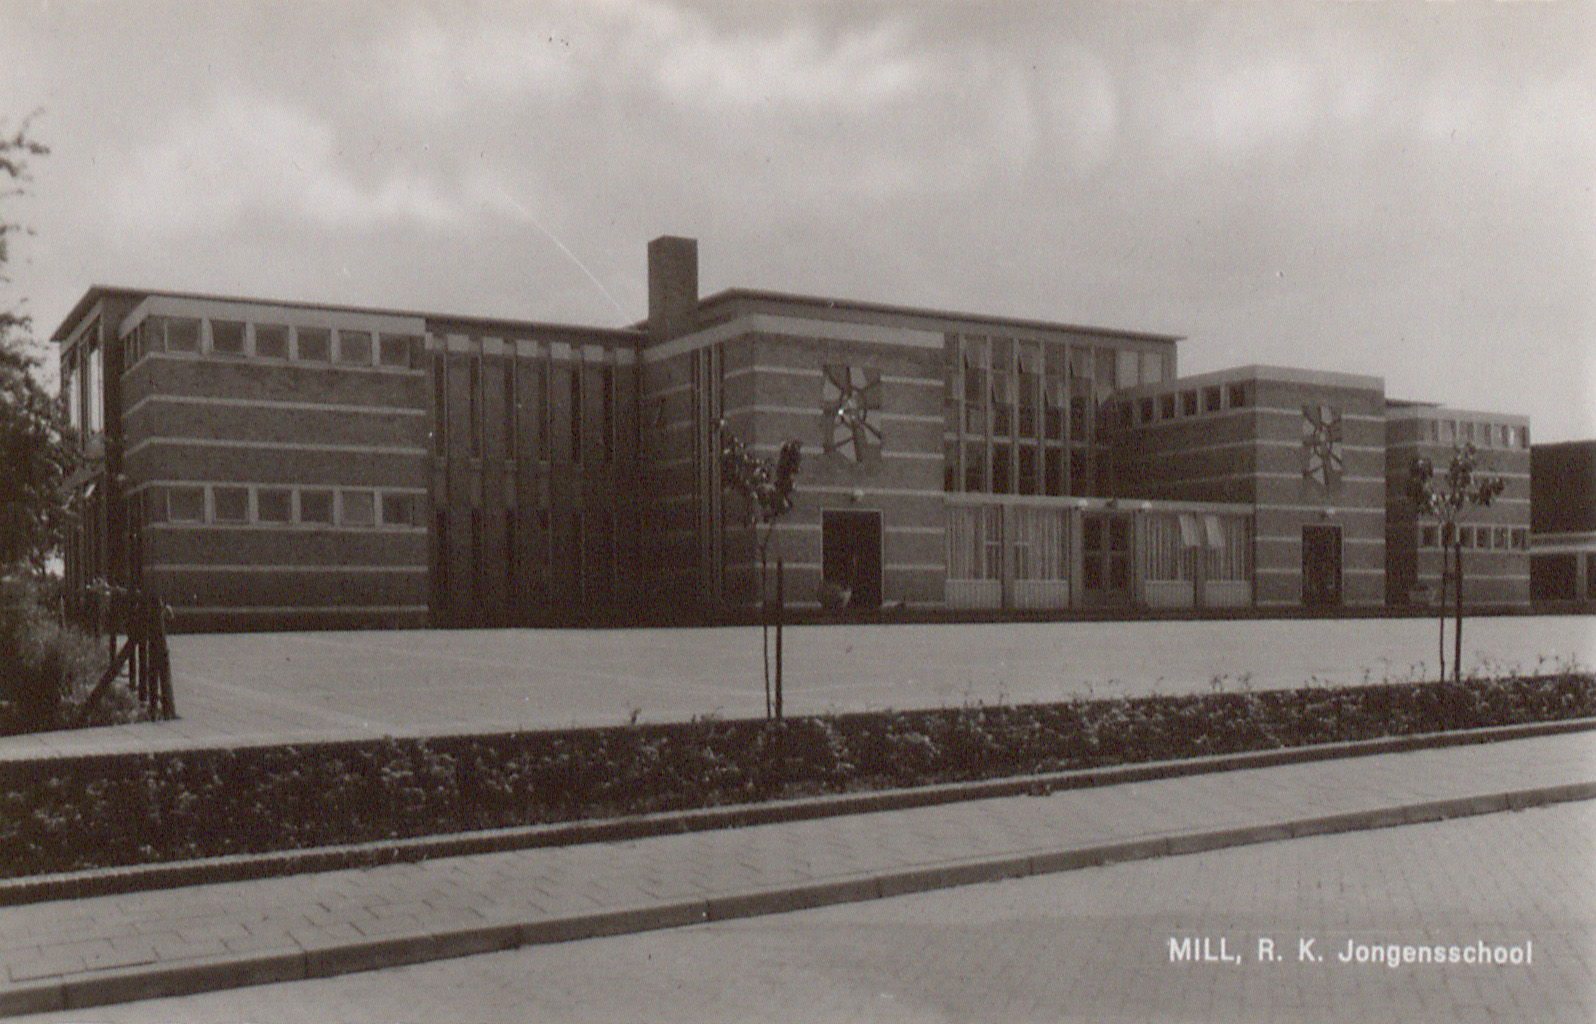 R.K. Jongensschool in Mill